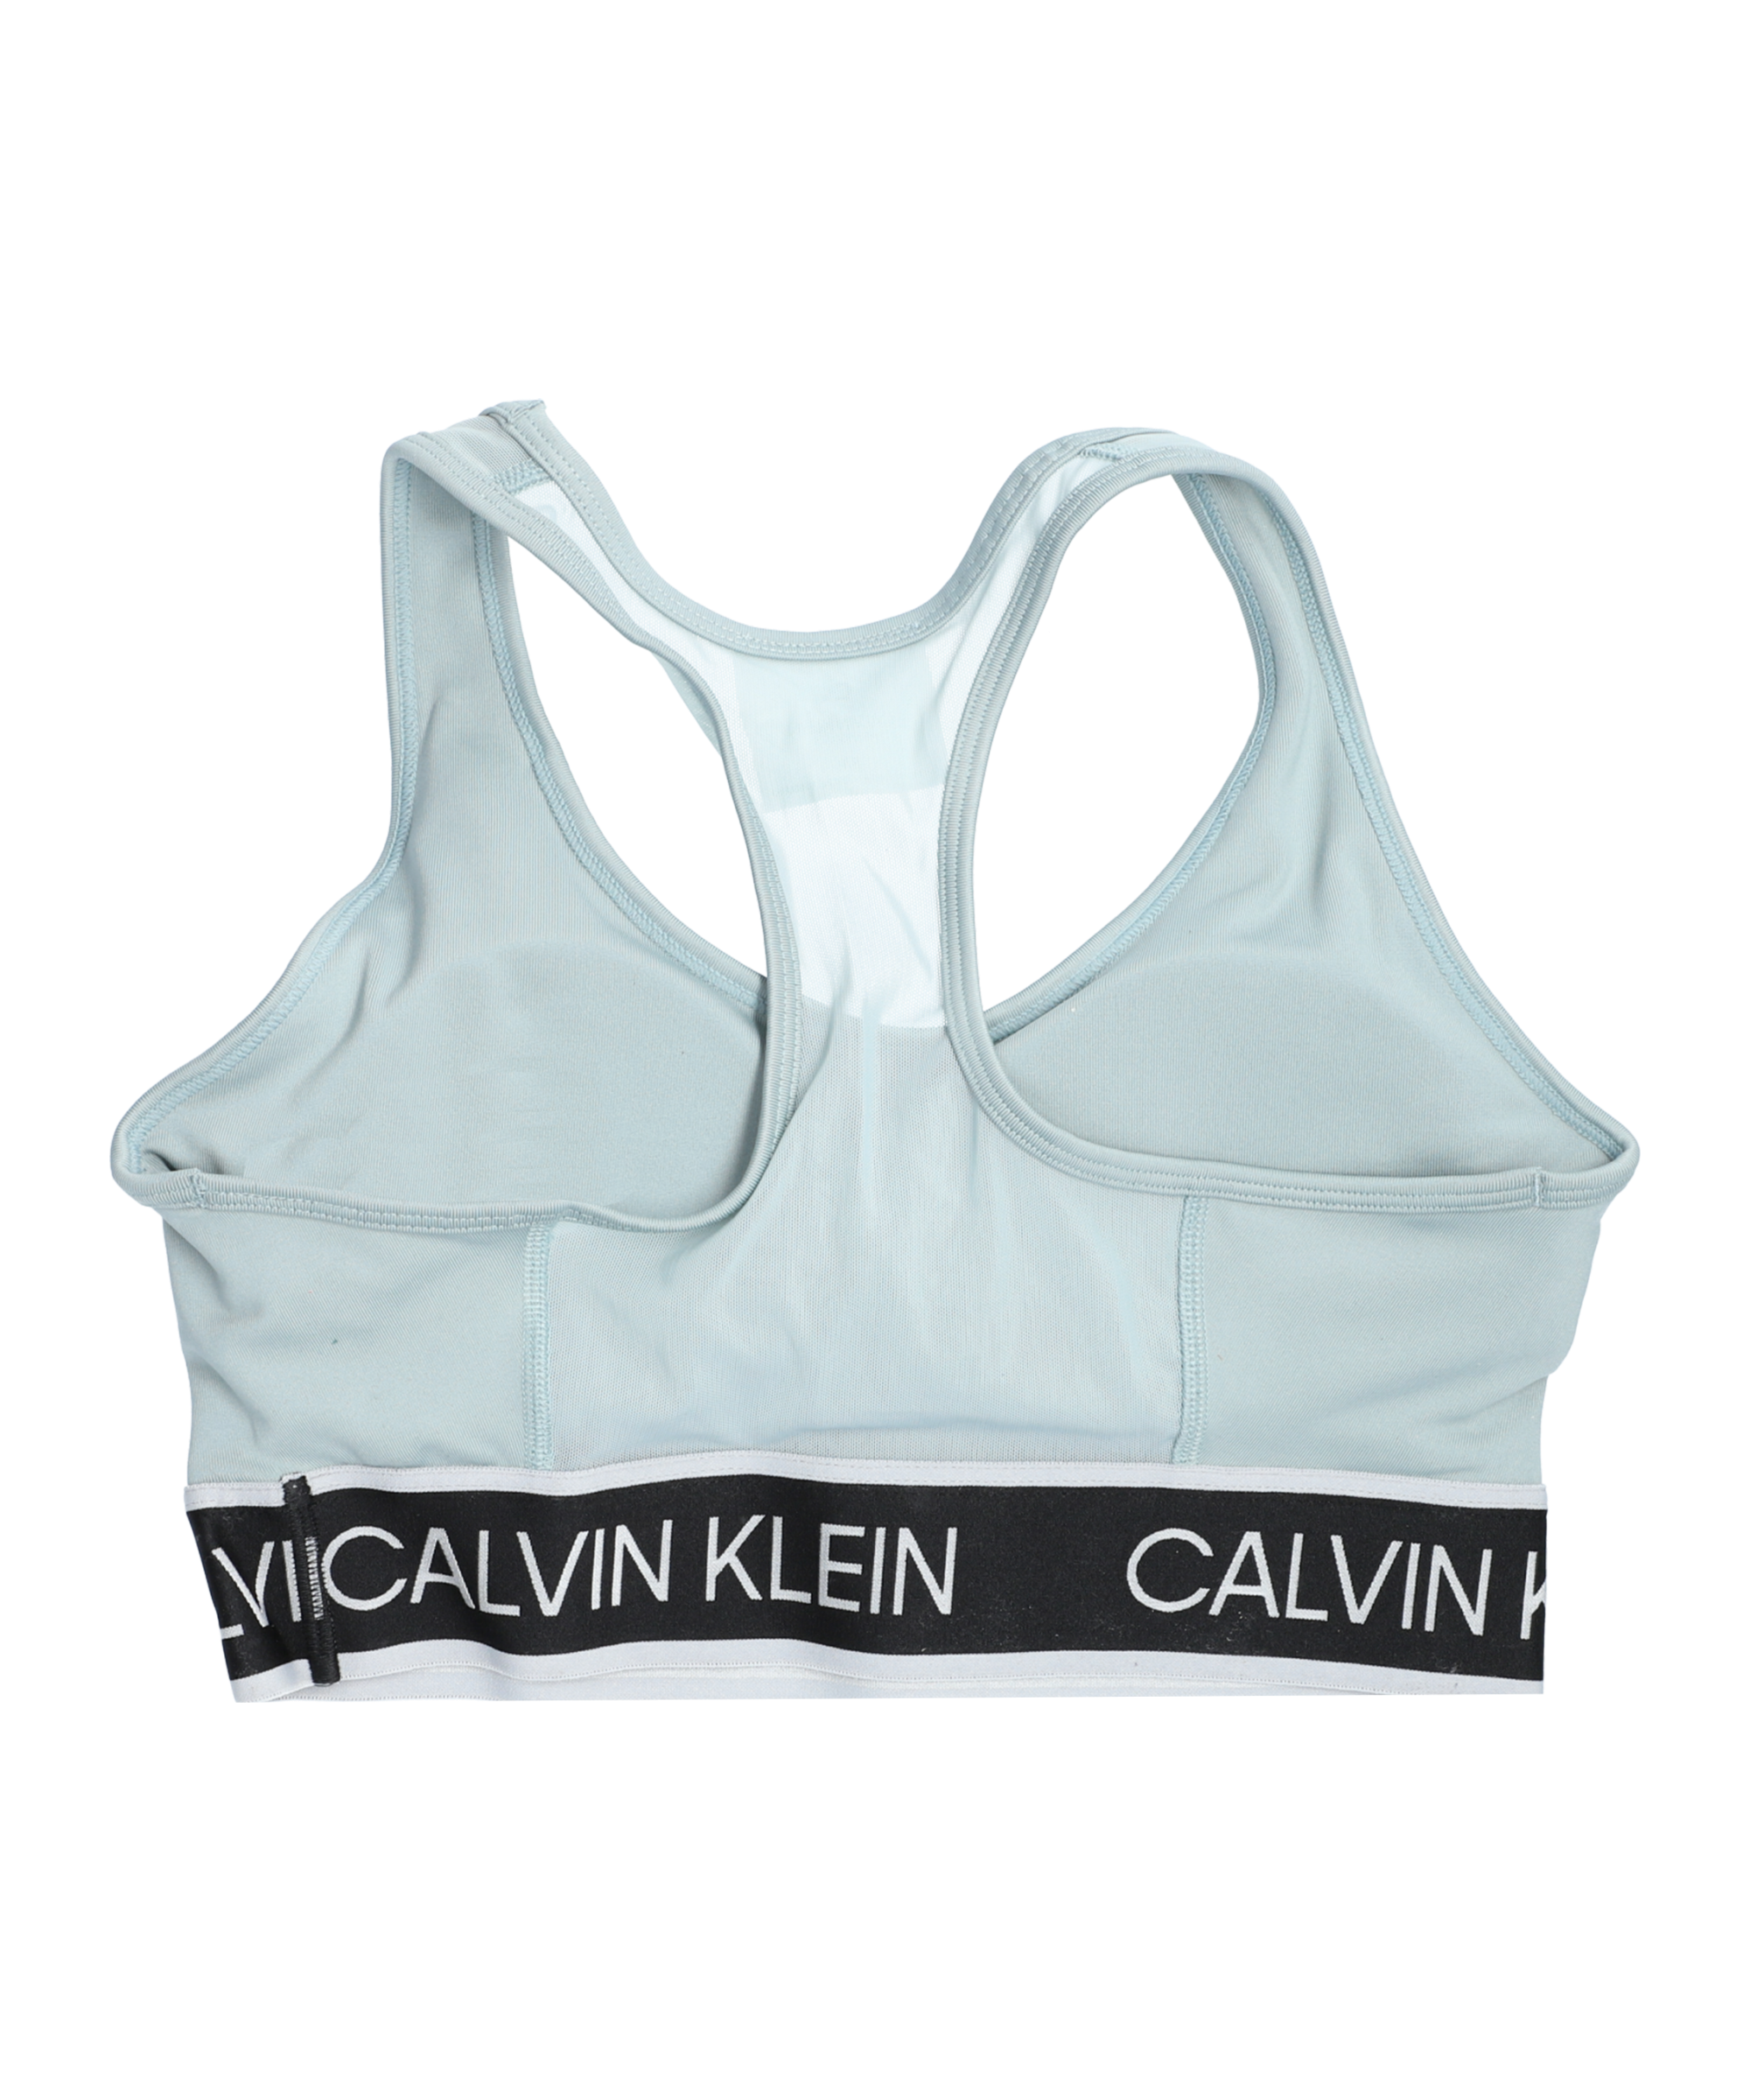 - Medium Support Türkis Sport Calvin Women Klein Bra